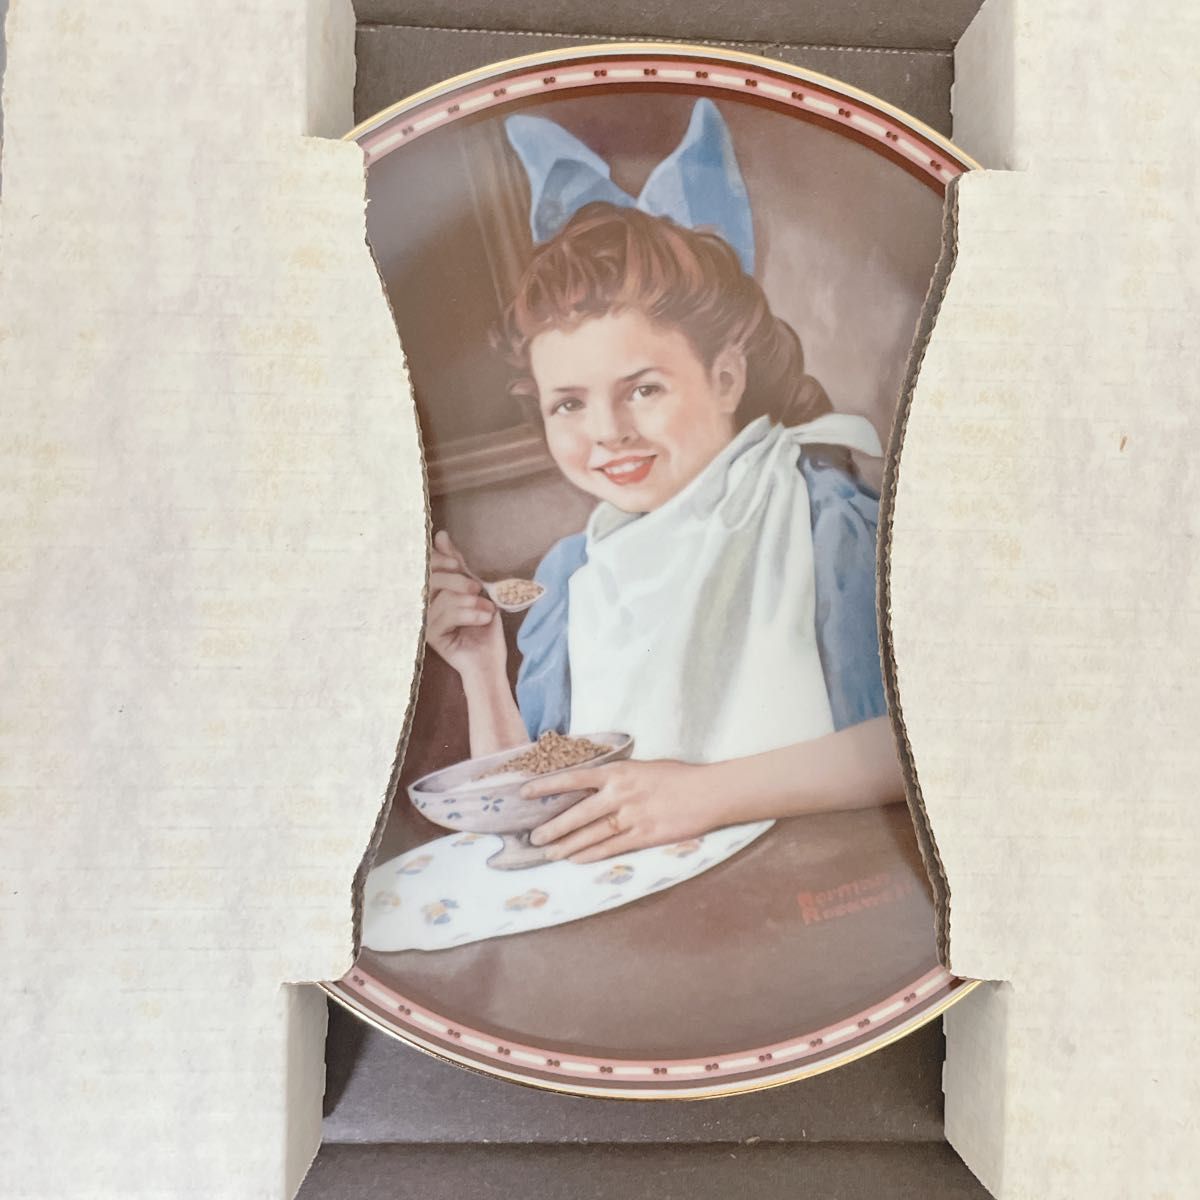 【新品・証明書】1987年 ノーマンロックウェル 飾り皿 プレート アメリカ製B